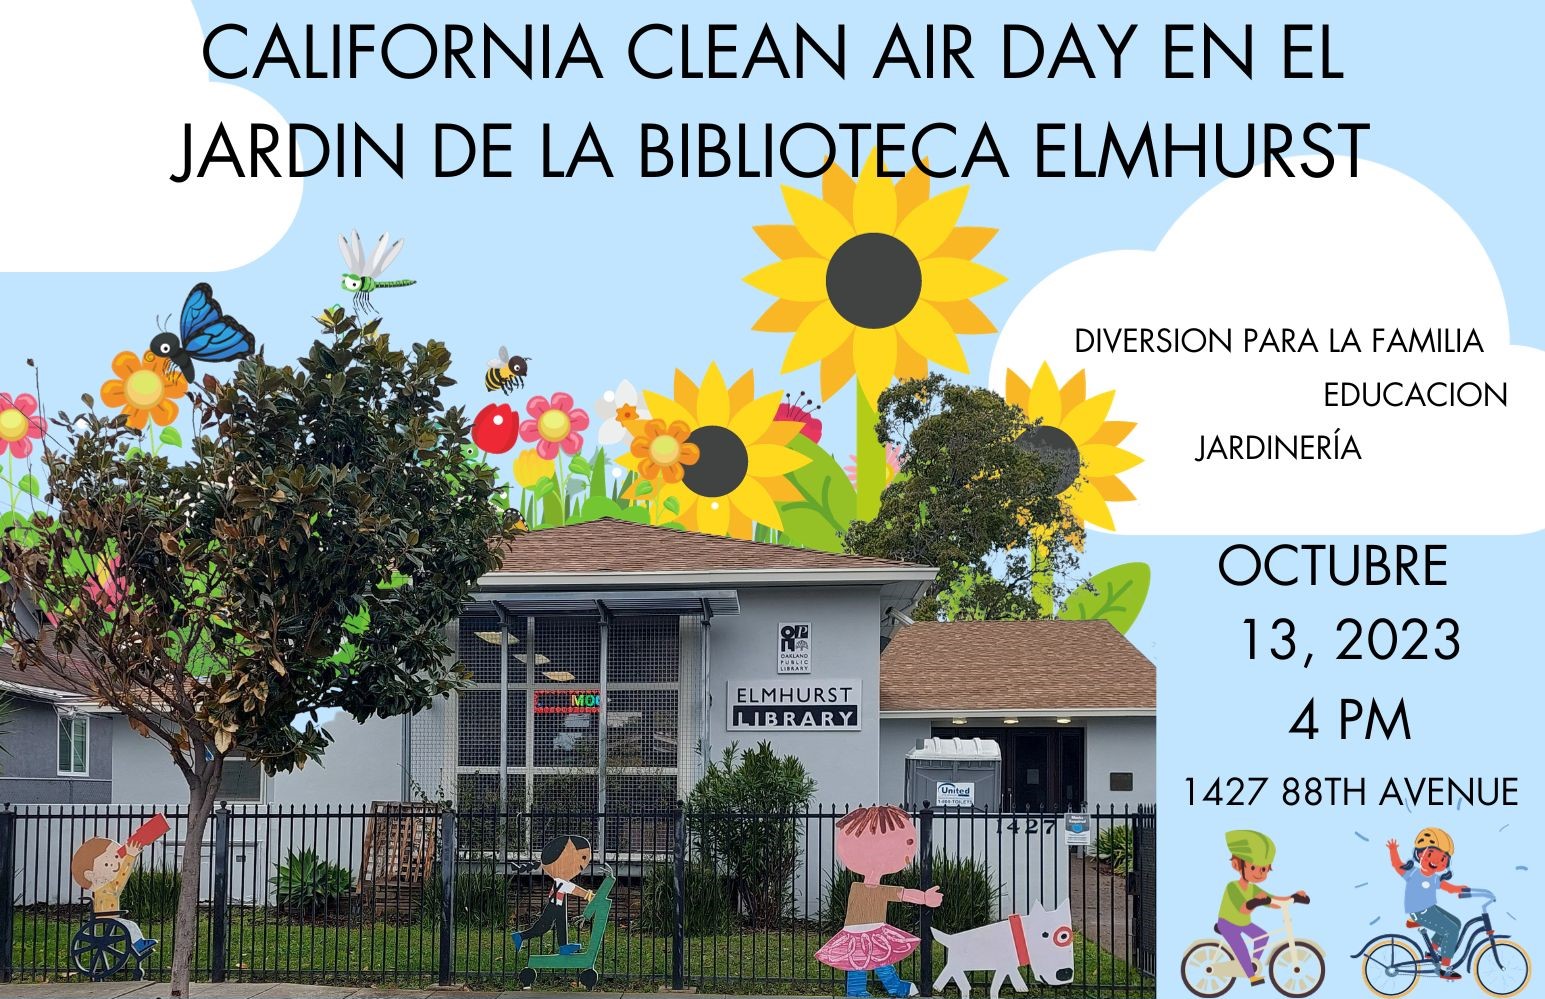 California Clean Air Day en el jardin de la biblioteca Elmhurst. Diversion para la familia, educacion, jarinería. Octubre 13, 2023, 4PM, 1427 88th Avenue